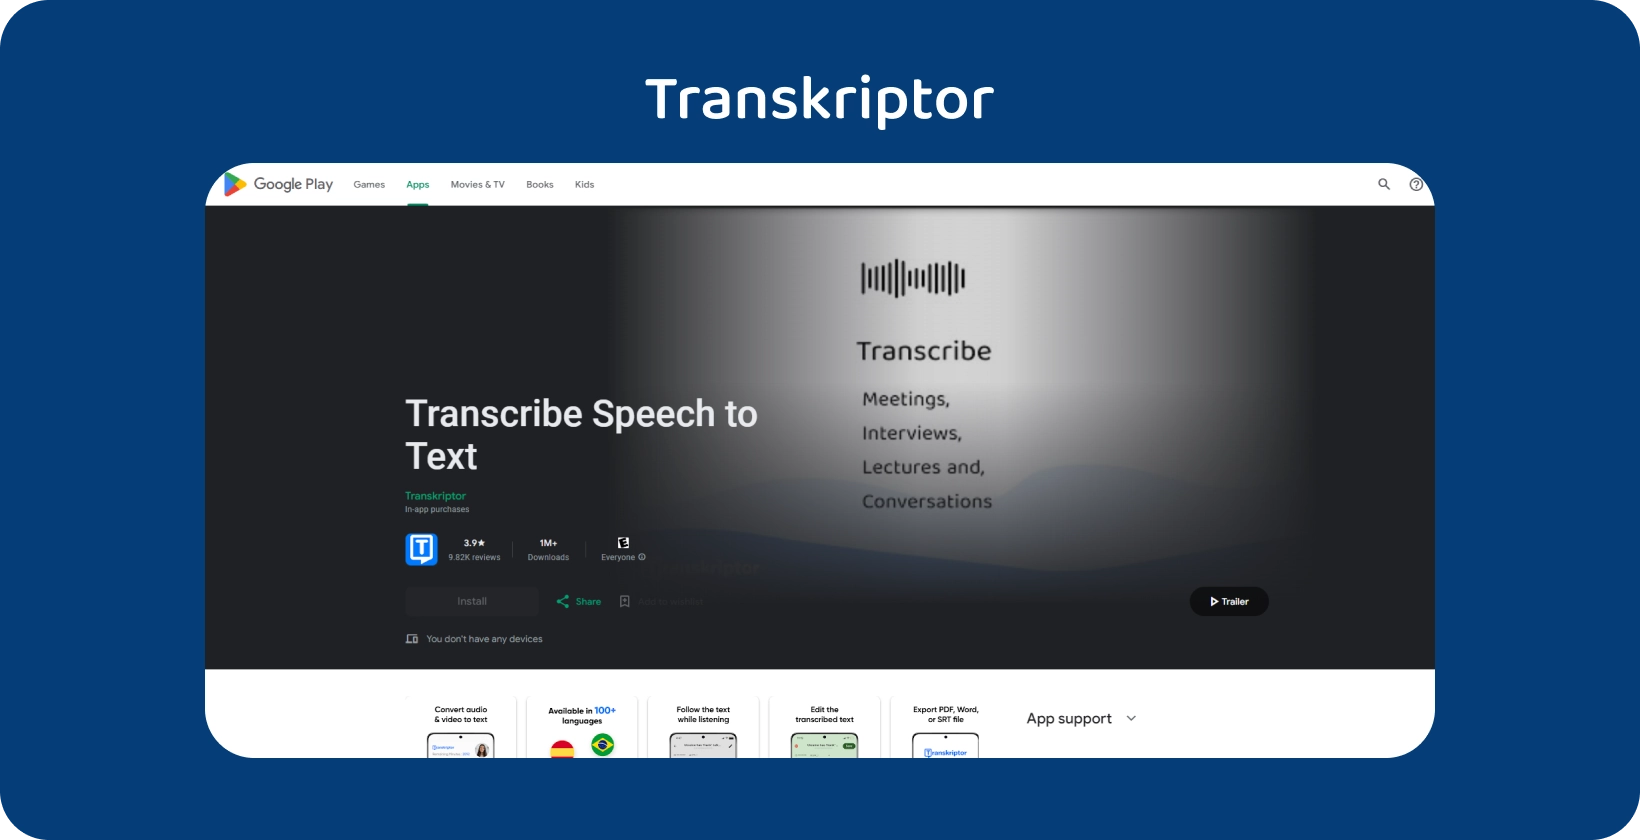 Transkriptor on Google Play，一款用于将语音转录为文本的应用程序，非常适合会议和讲座。